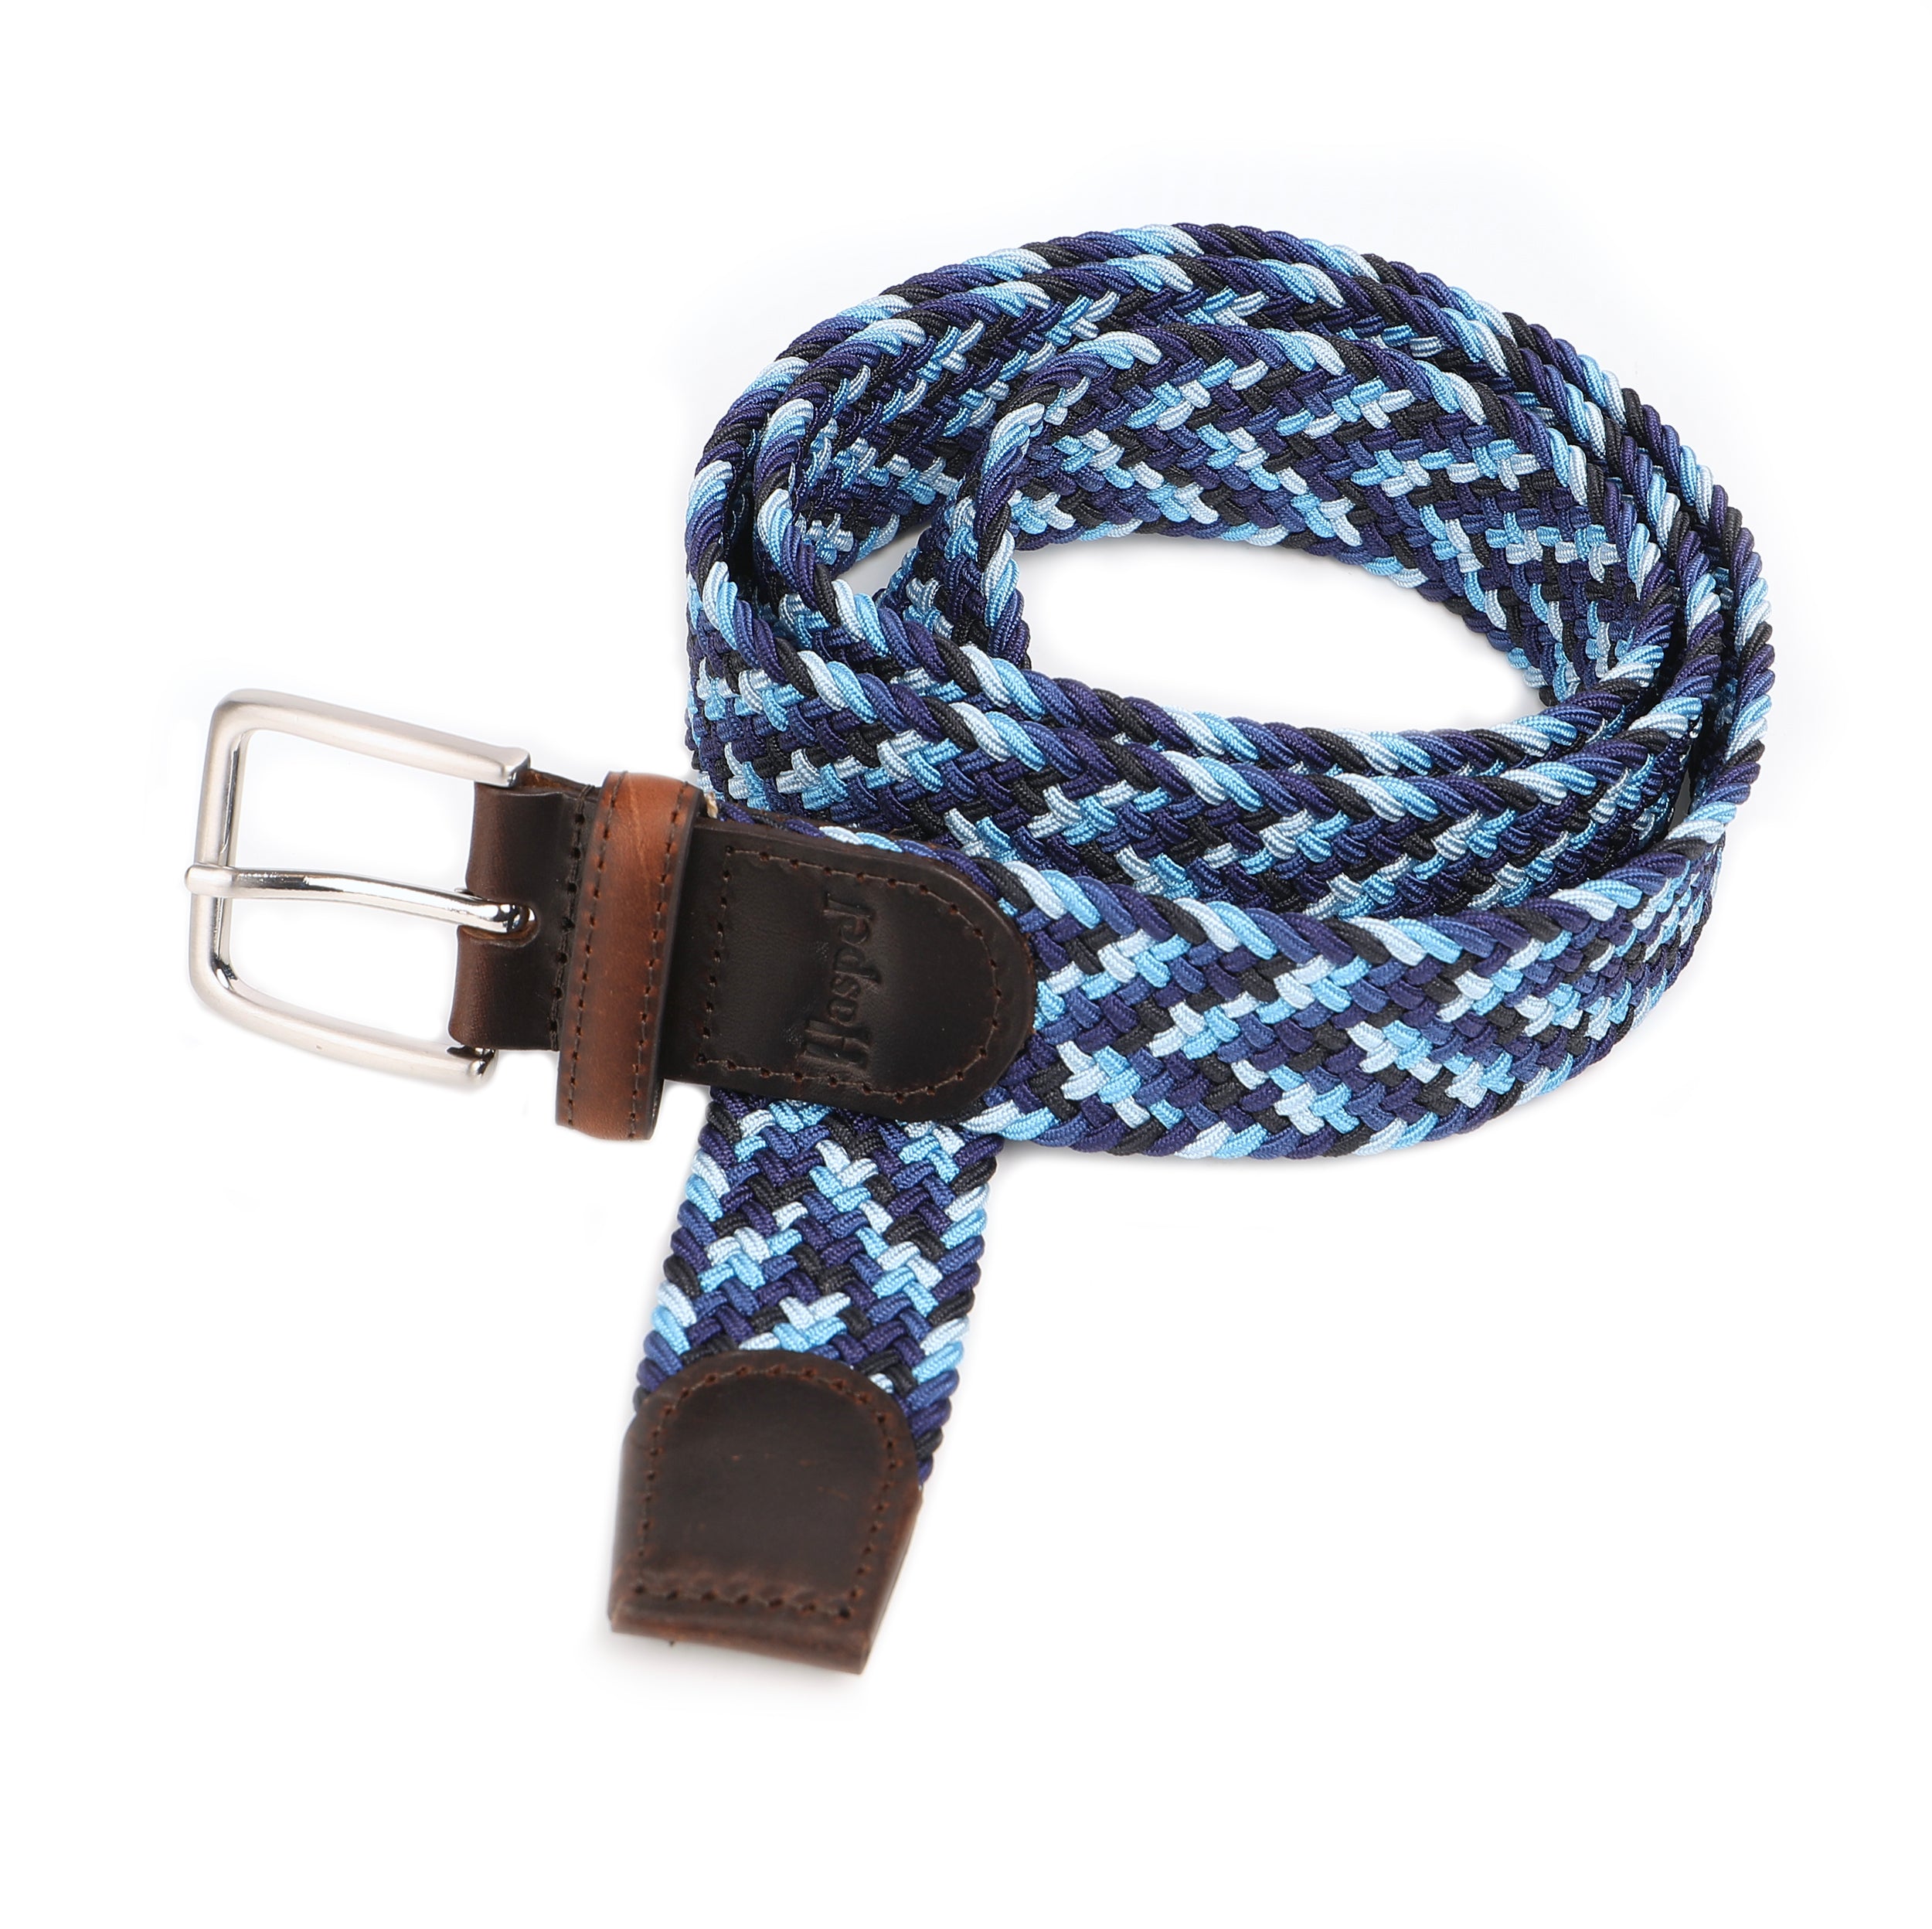 Belt, Royal Blue Multi Color Elastic Braided Belt